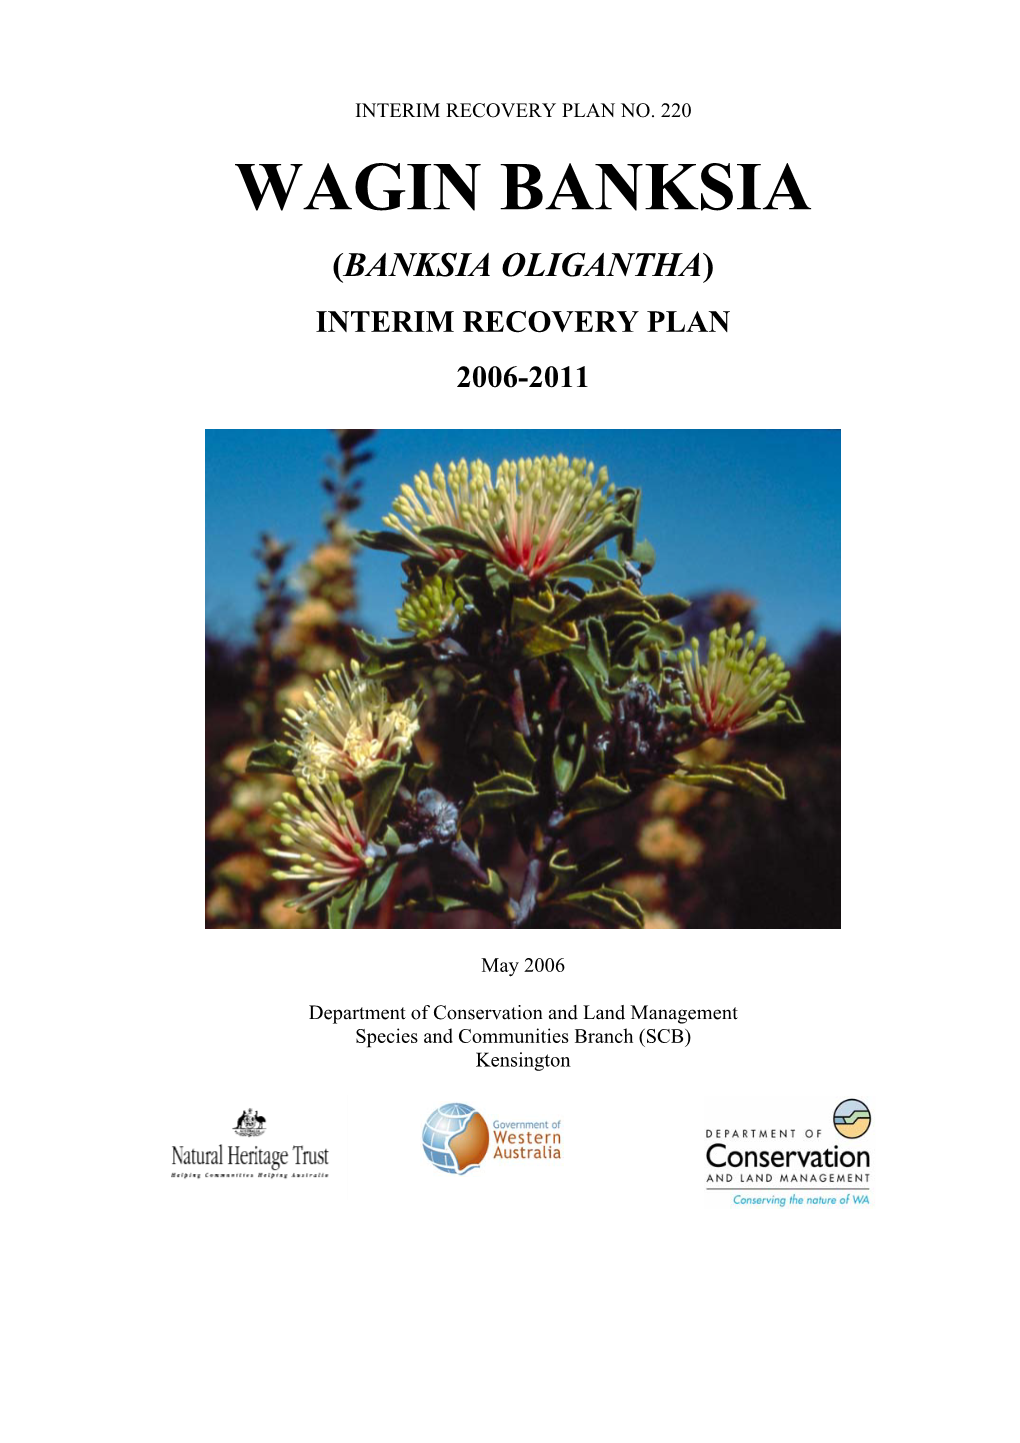 (Banksia Oligantha) Interim Recovery Plan 2006-2011